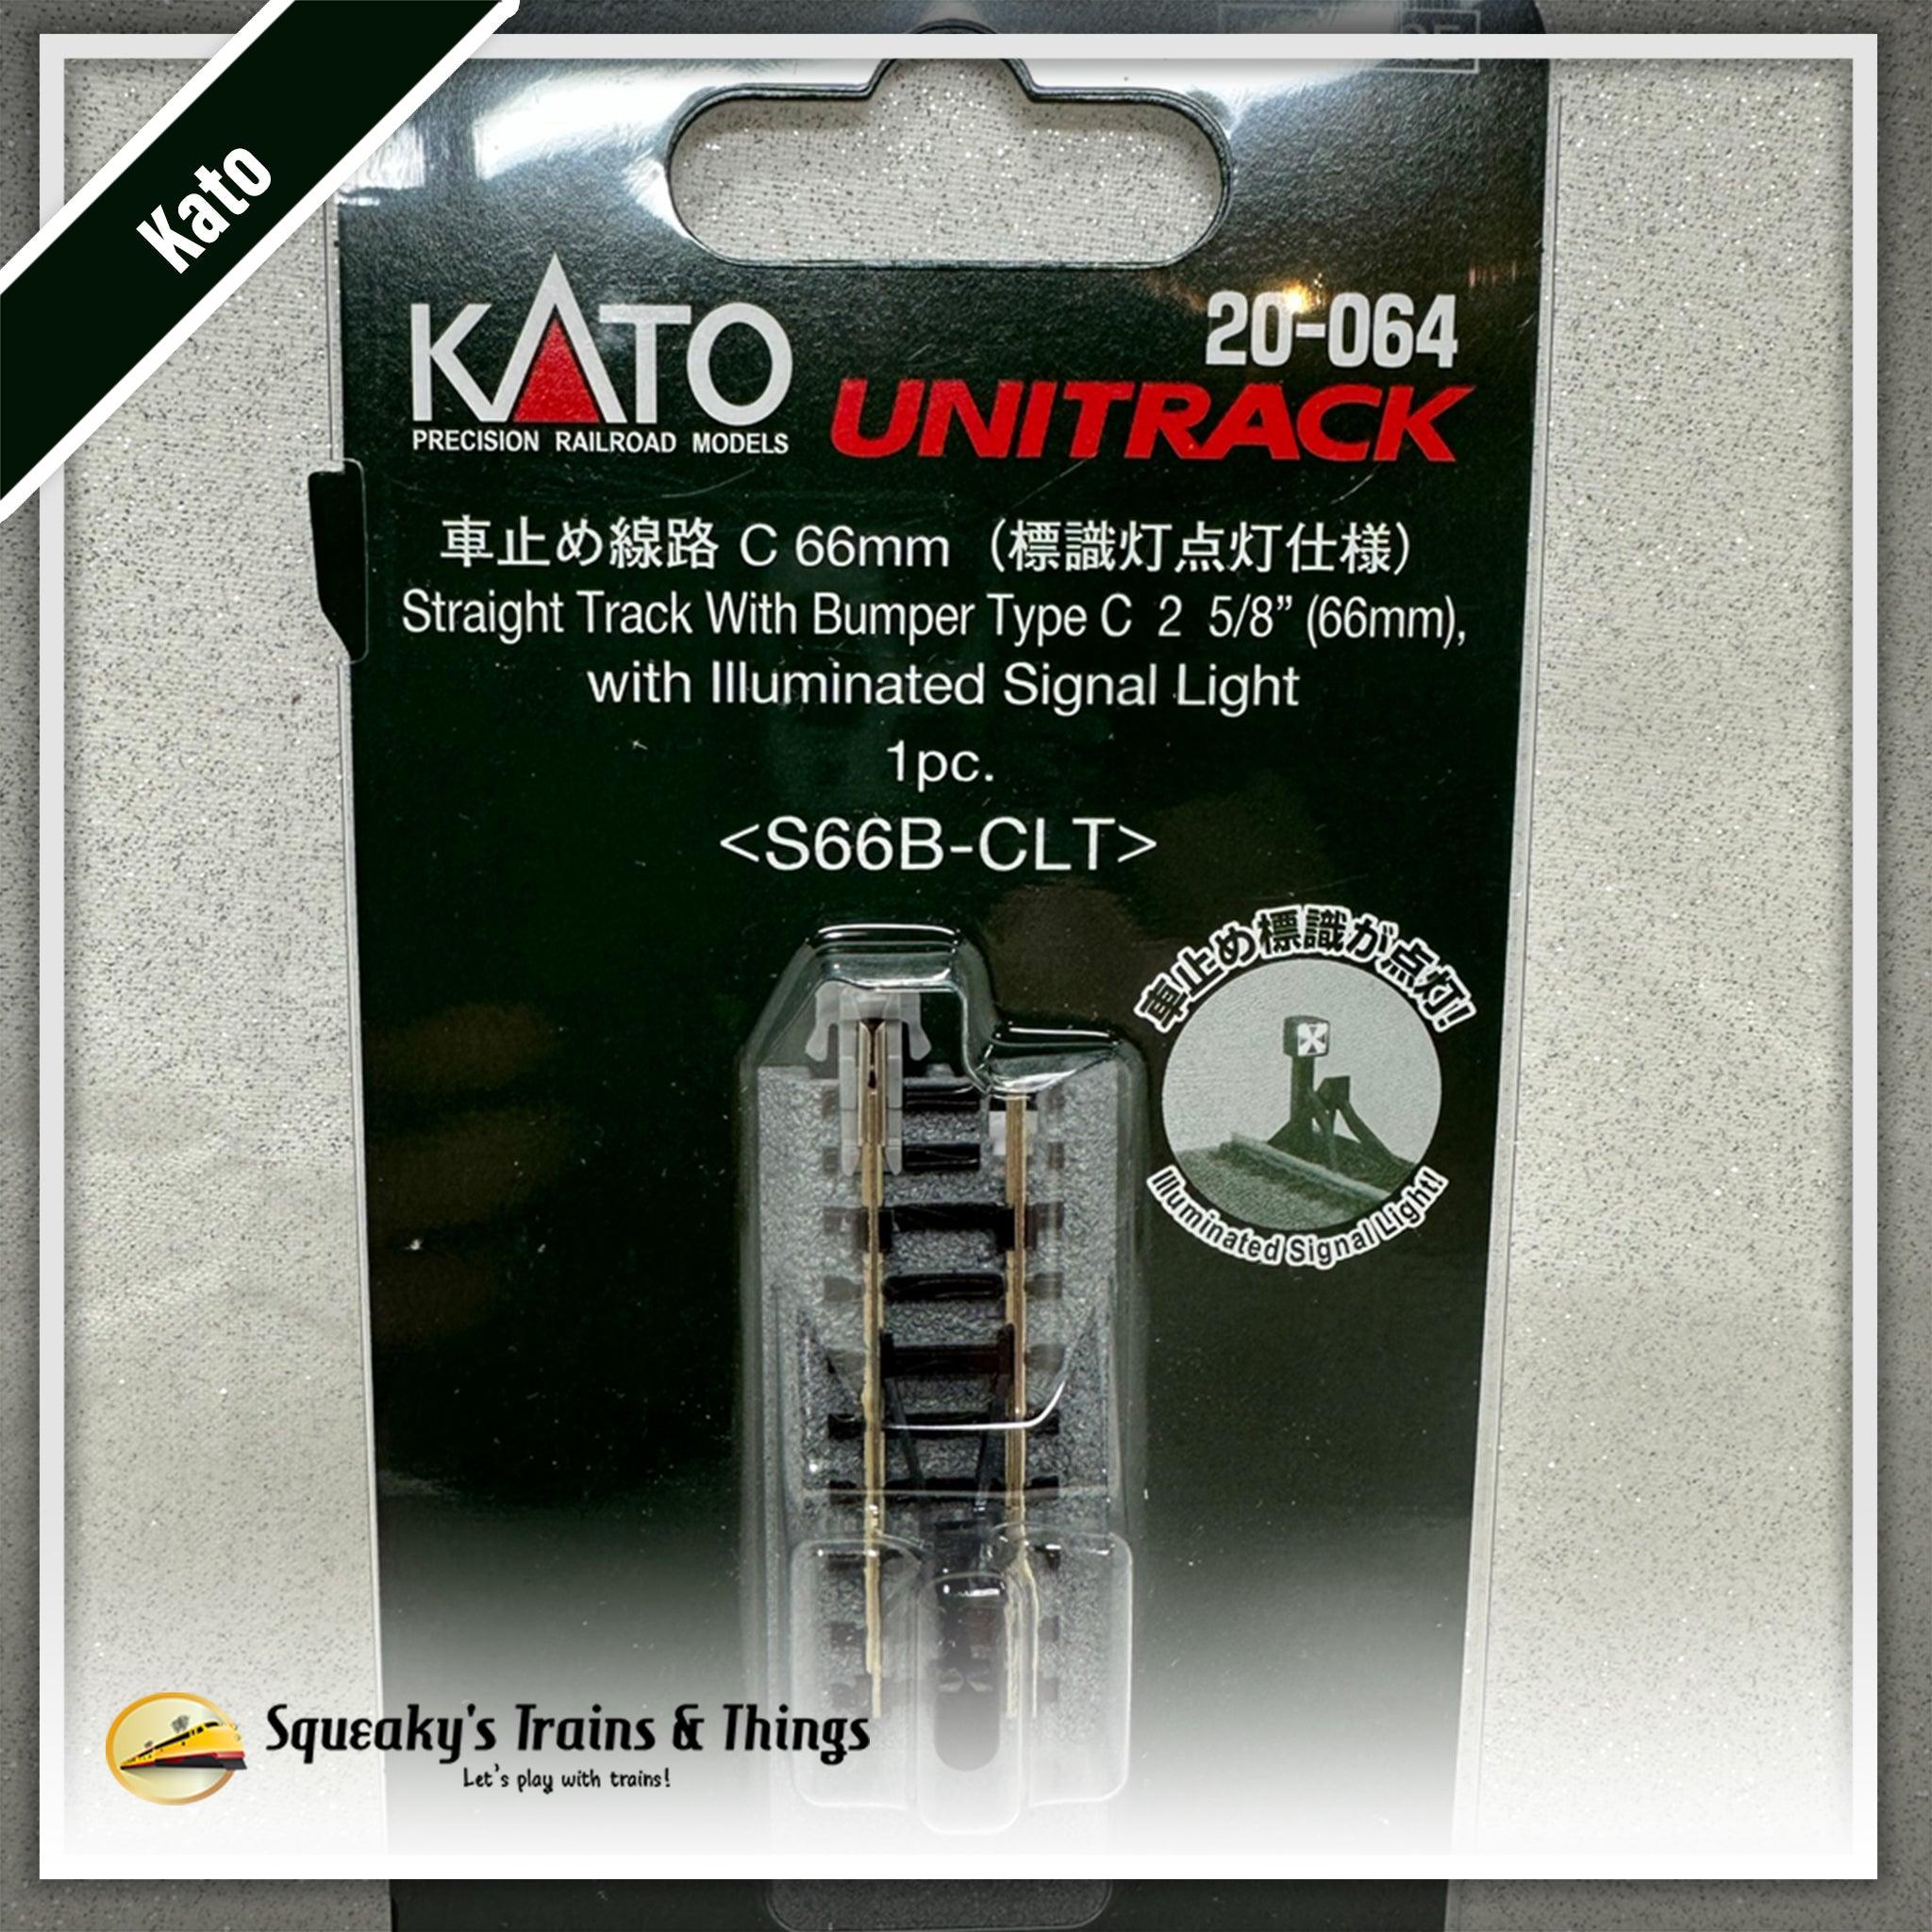 Kato 20-064 | Unitrack 66mm (2 5/6") Illuminated Bumper Track 'C' | N Scale